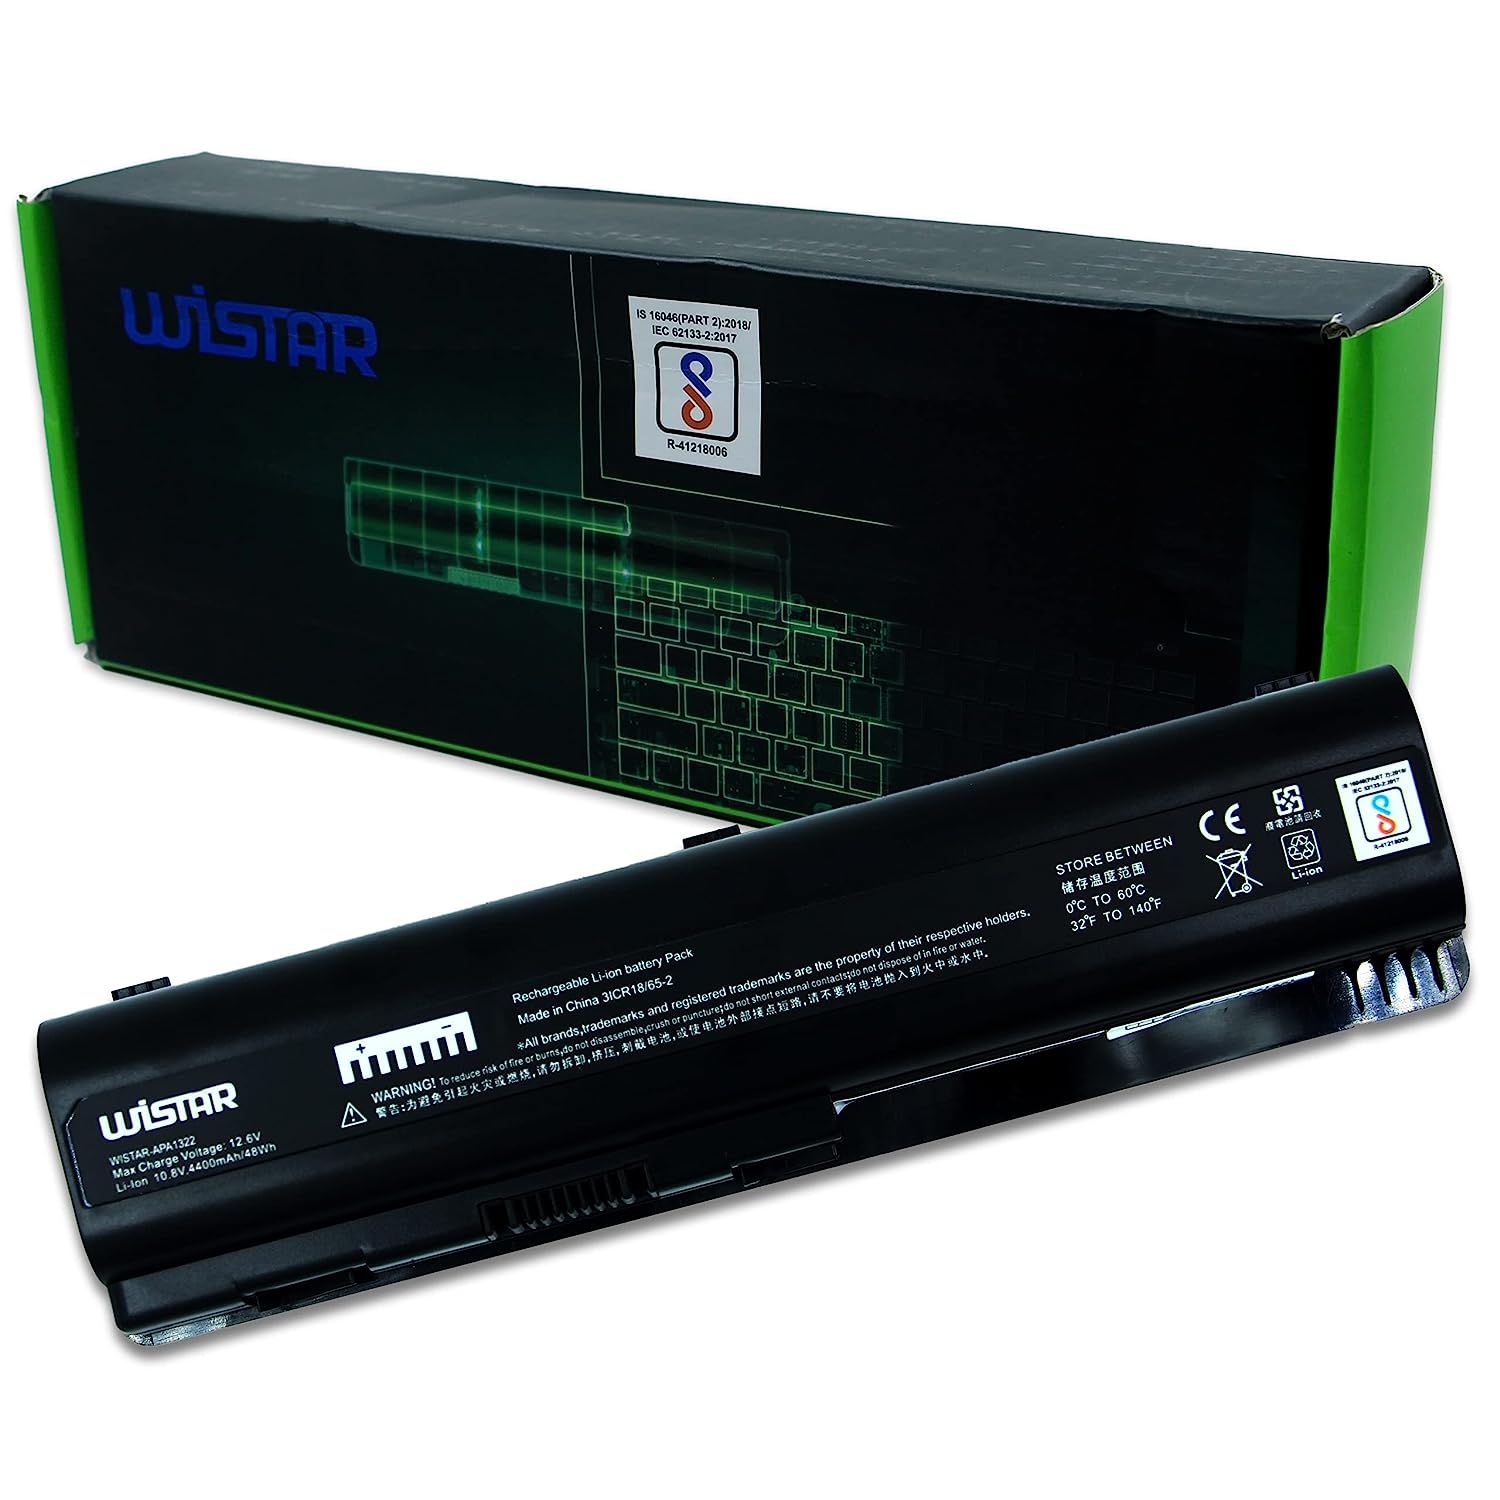 WISTAR Laptop Battery for HP Pavilion DV4/DV5 Compaq CQ40, CQ45, CQ50, CQ60, CQ 61, CQ70 Series Laptop Battery